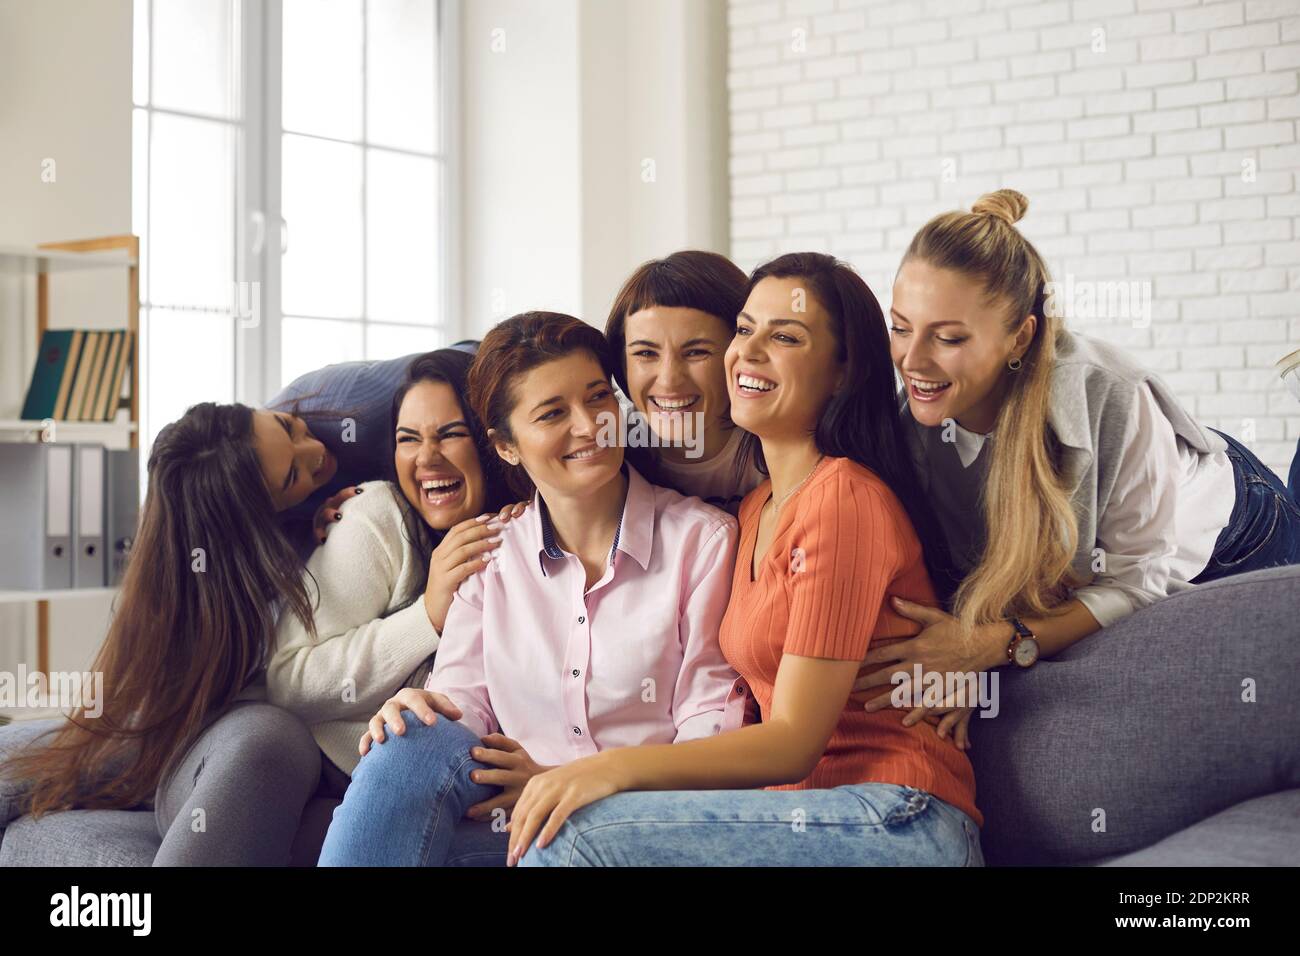 Gruppe von glücklichen jungen Frauen genießen ihre Freundschaft und mit Spaß zusammen Stockfoto